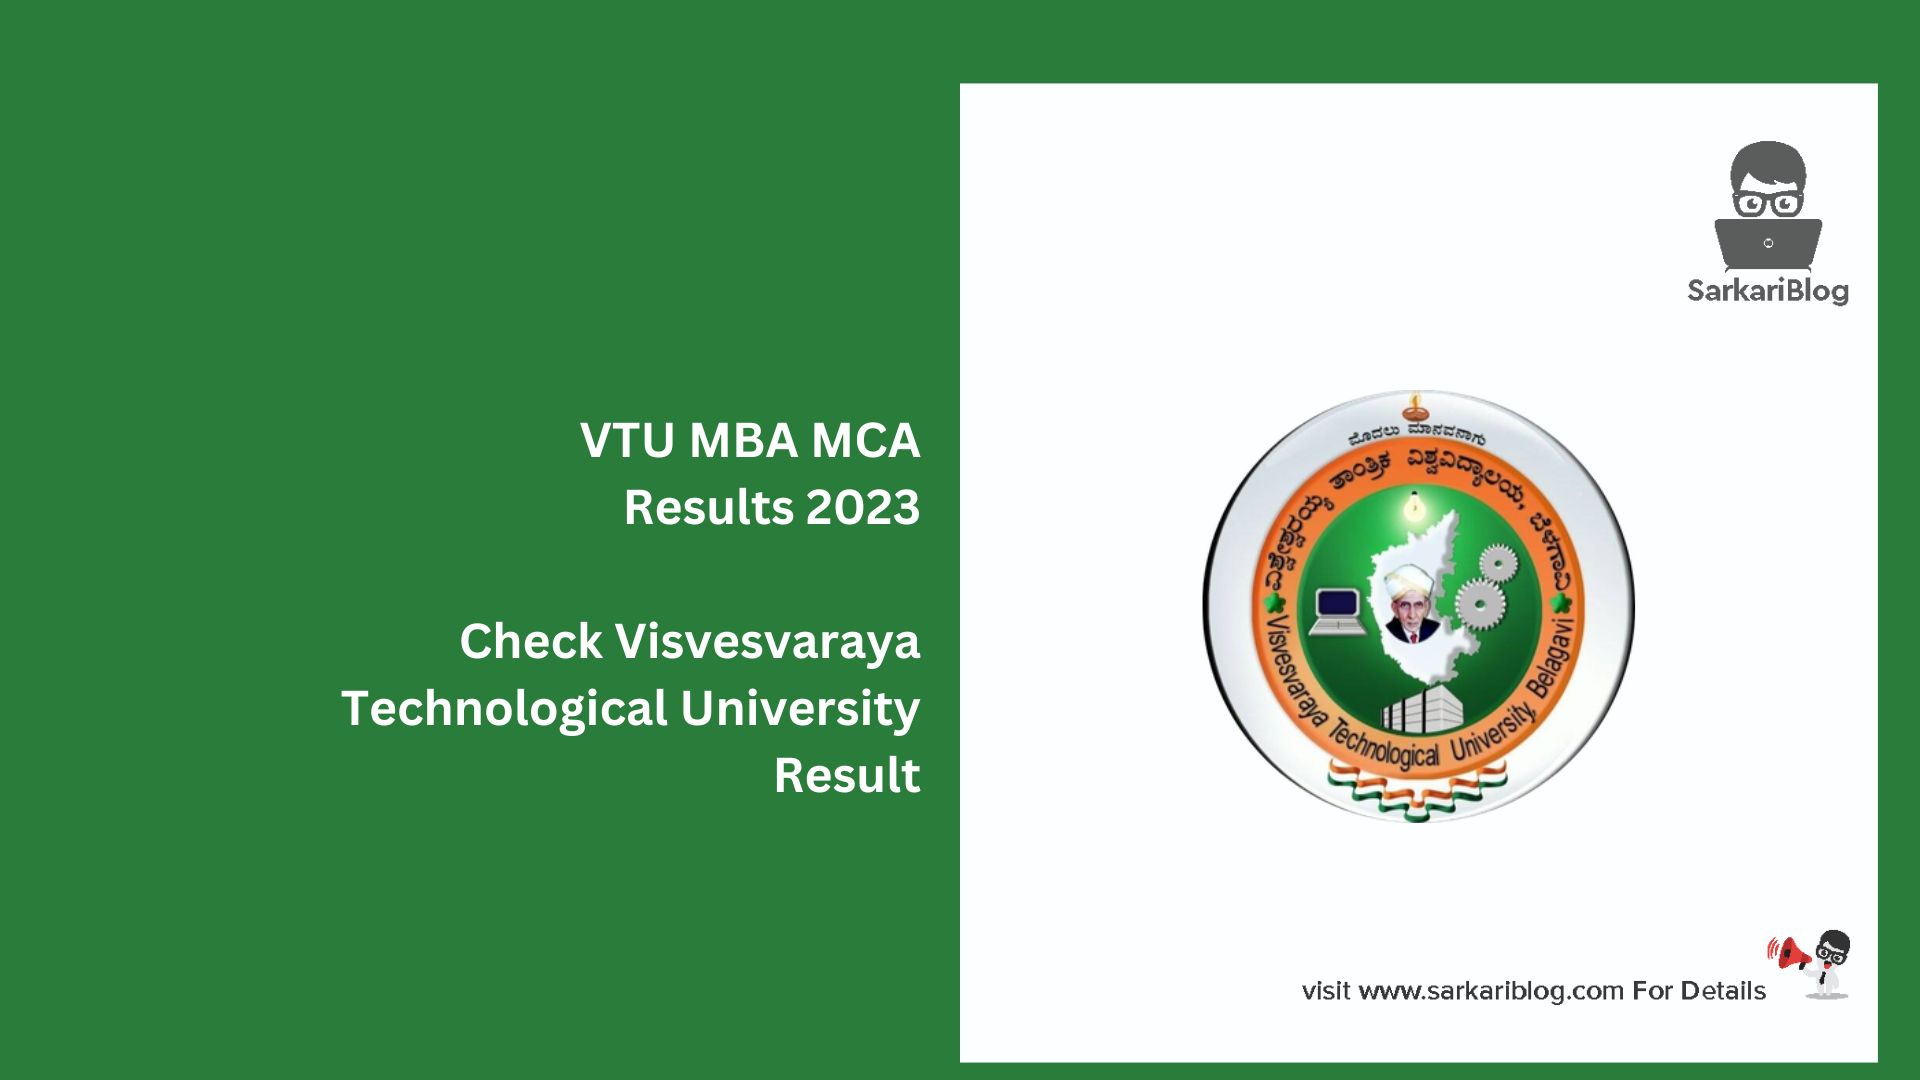 VTU MBA MCA Results 2023